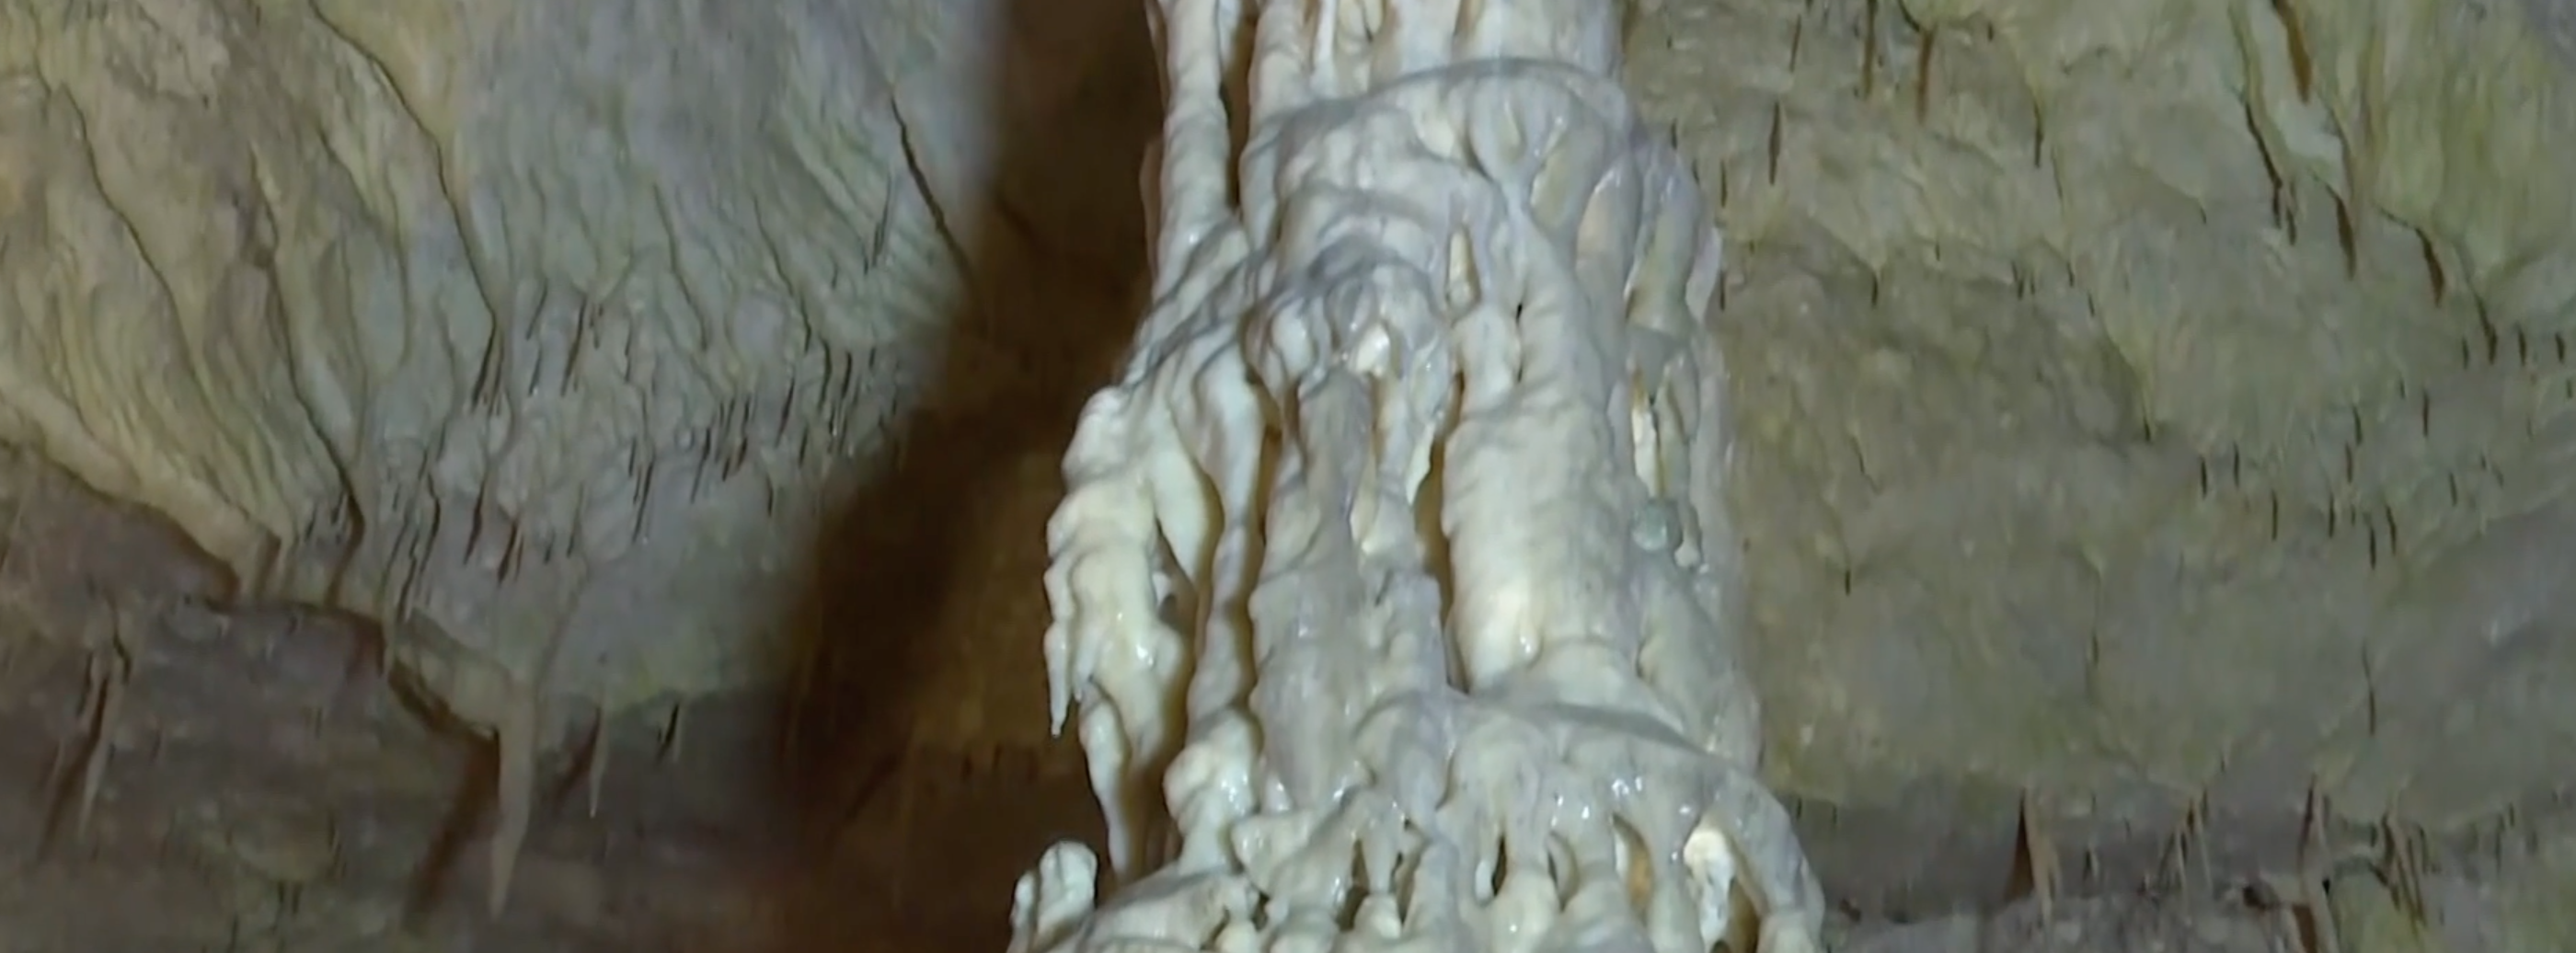 Σπήλαιο Περάματος: Ένα θαύμα της φύσης με εκθαμβωτικούς σχηματισμούς από σταλακτίτες και σταλαγμίτες